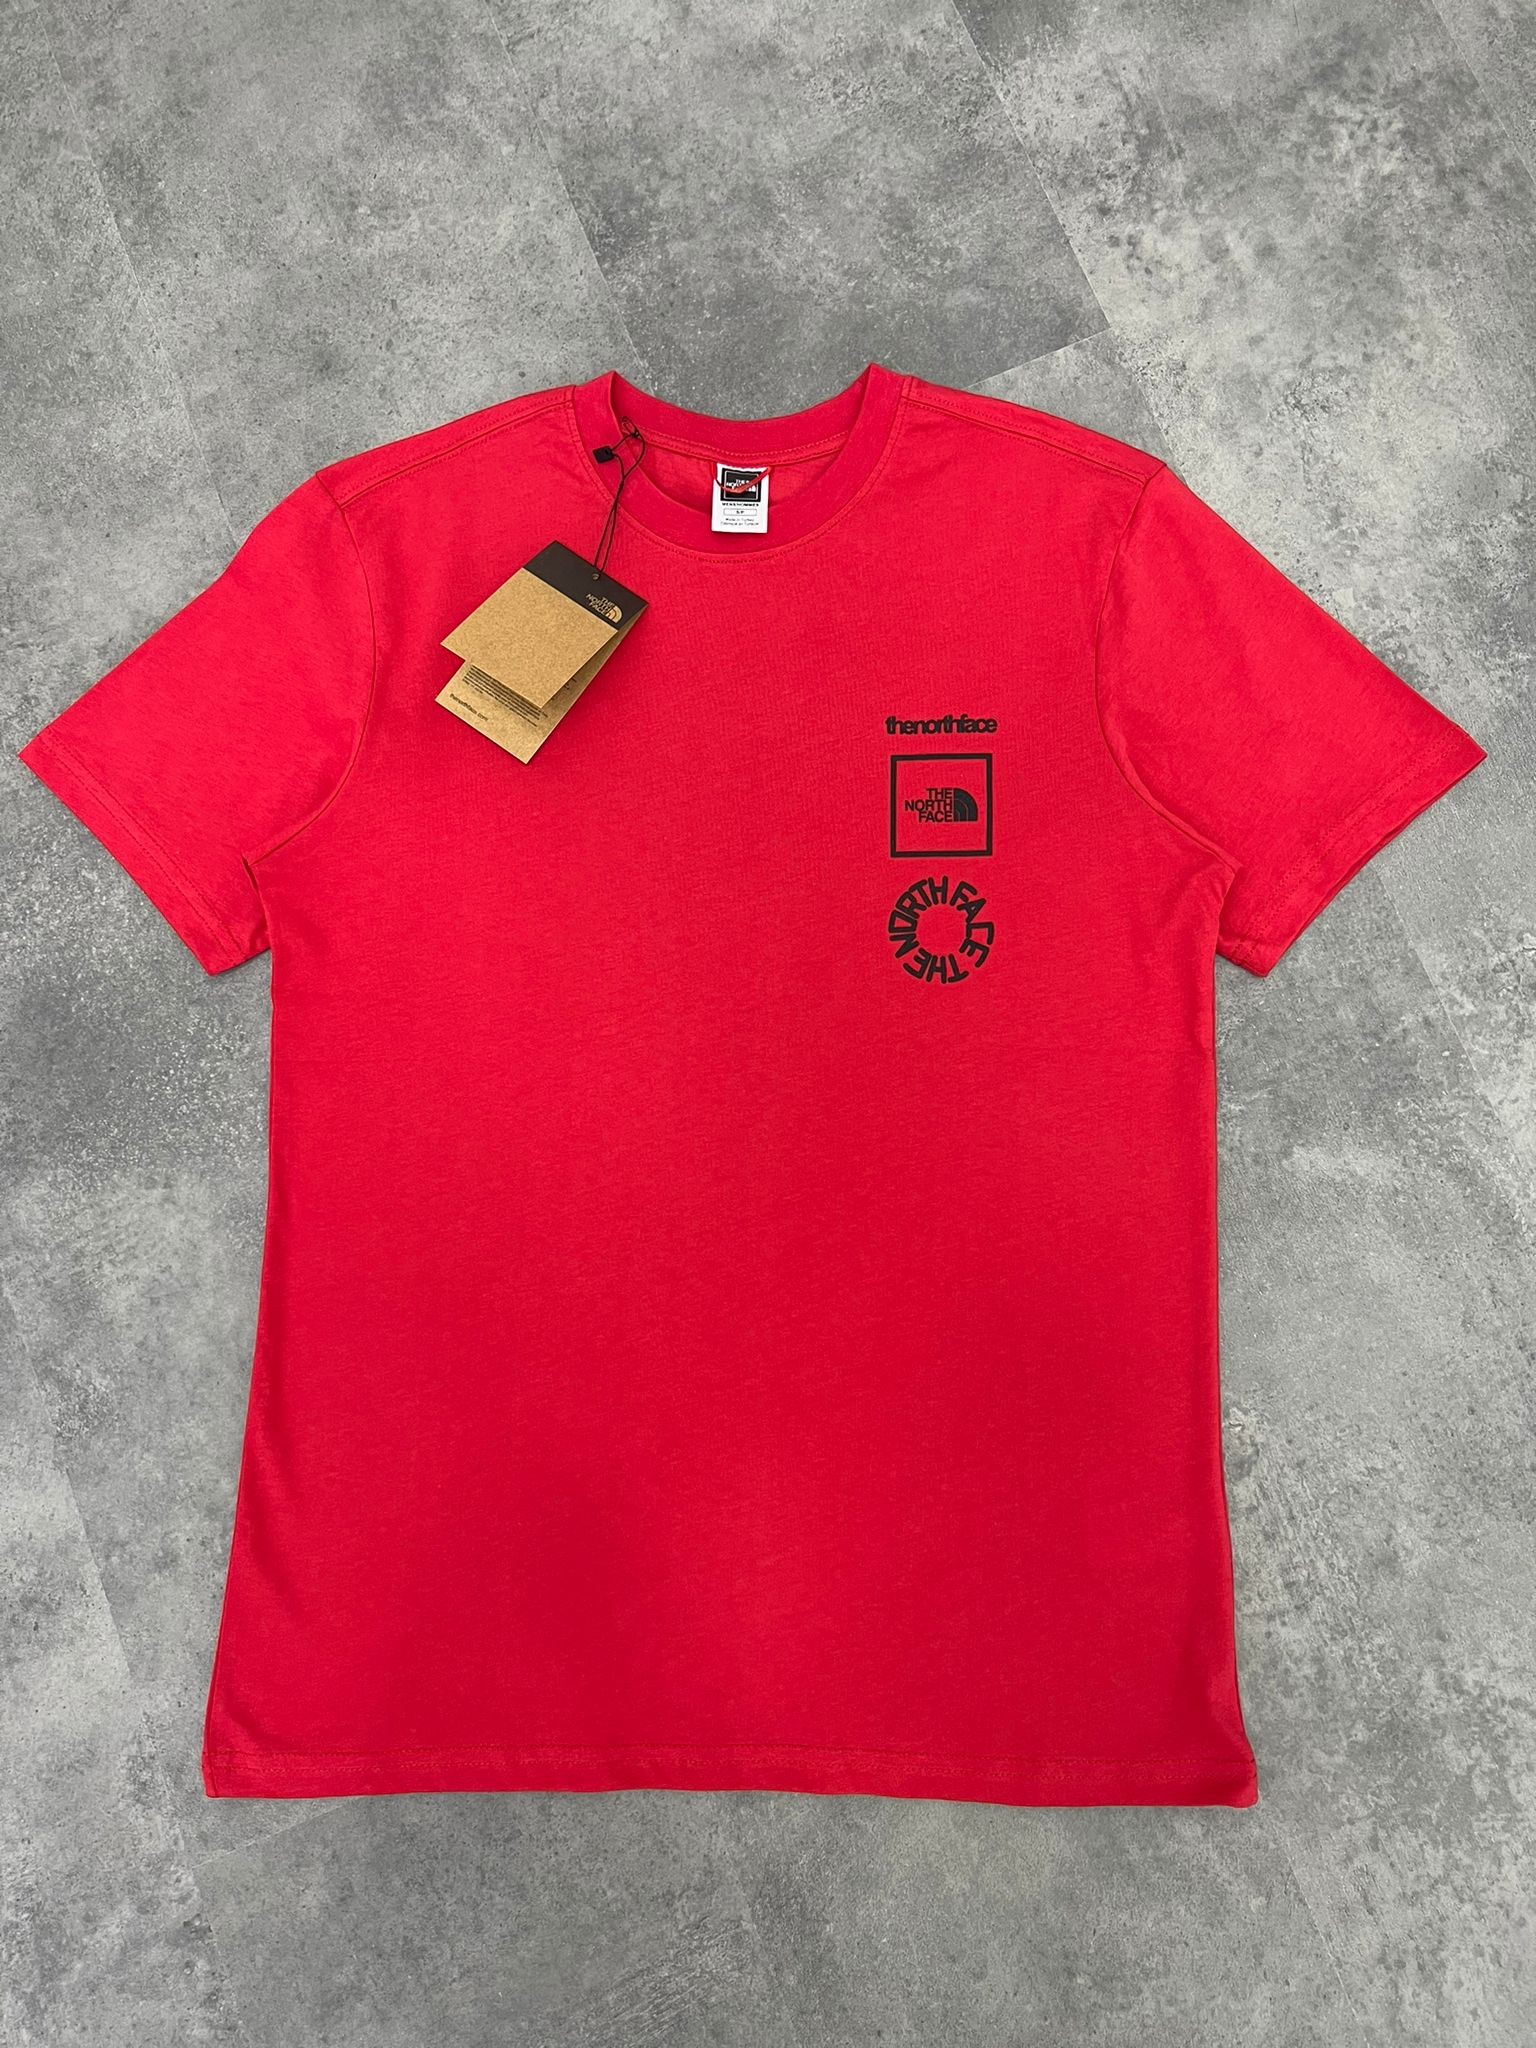 Yeni Sezon Geometrical Shapes Print Red T-shirt